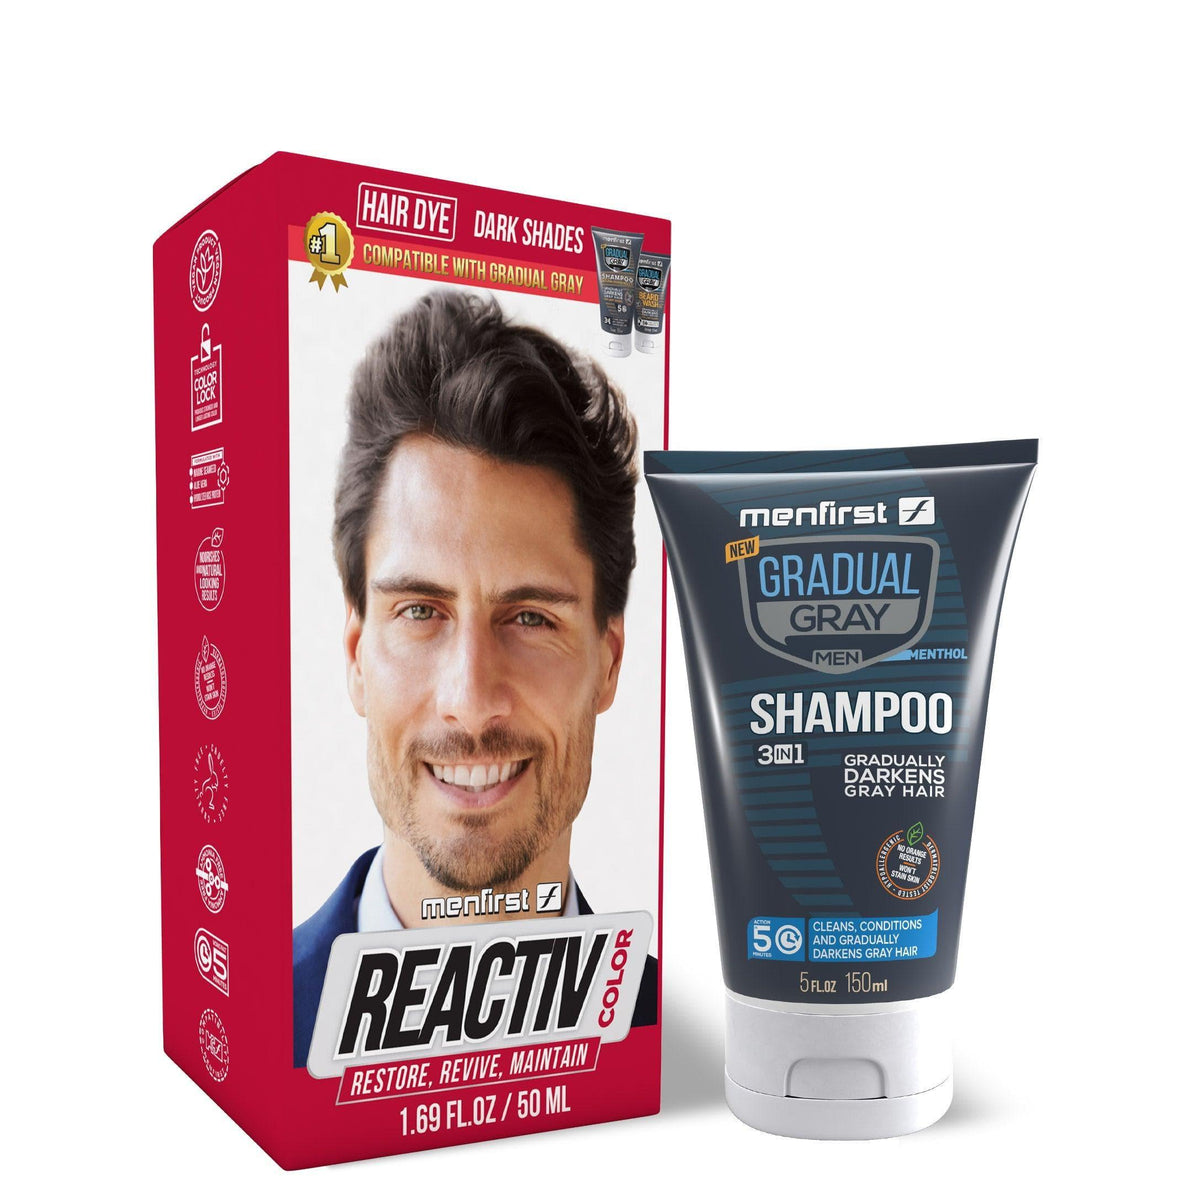 KIT 1 Reactiv + 1 Shampoo Hair Dark Shades - Menfirst - Dye hair